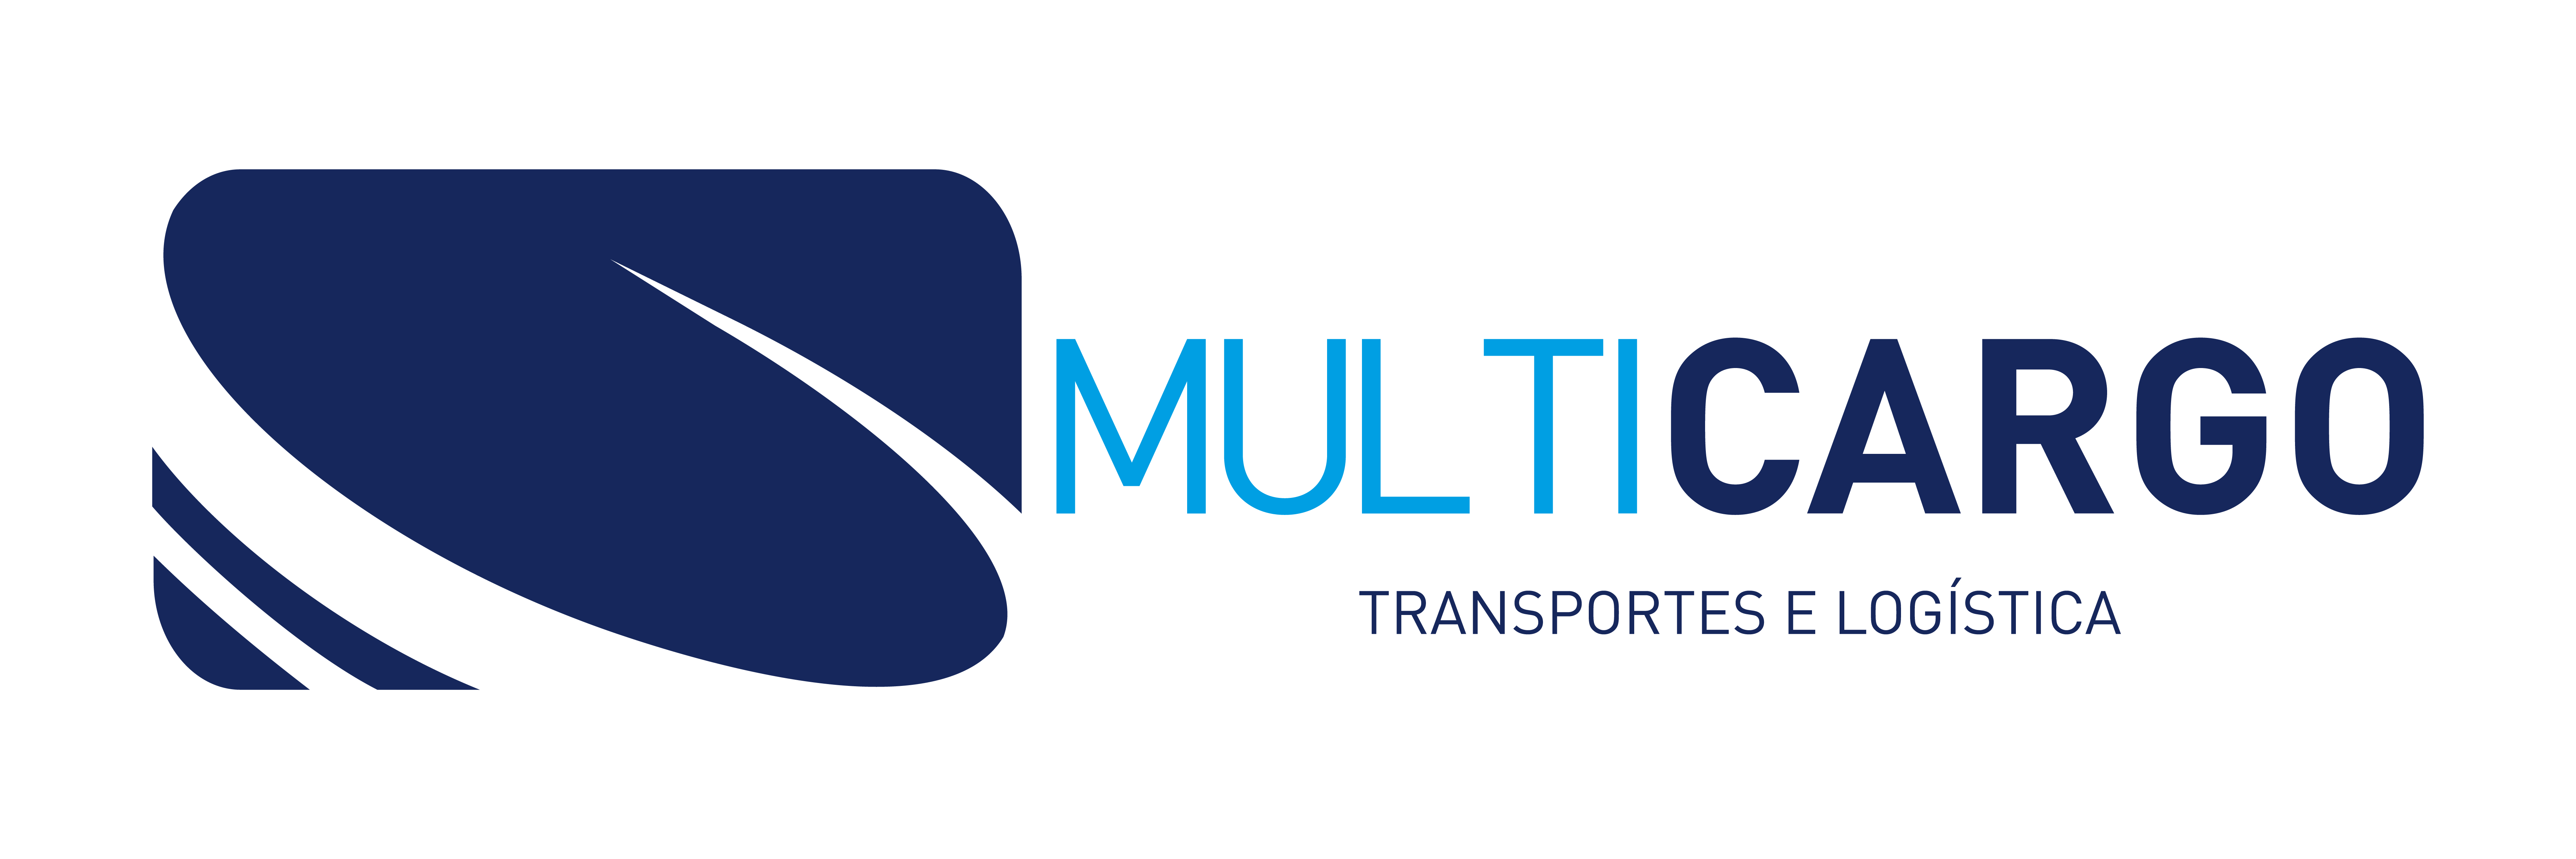 Multicargo logotipo